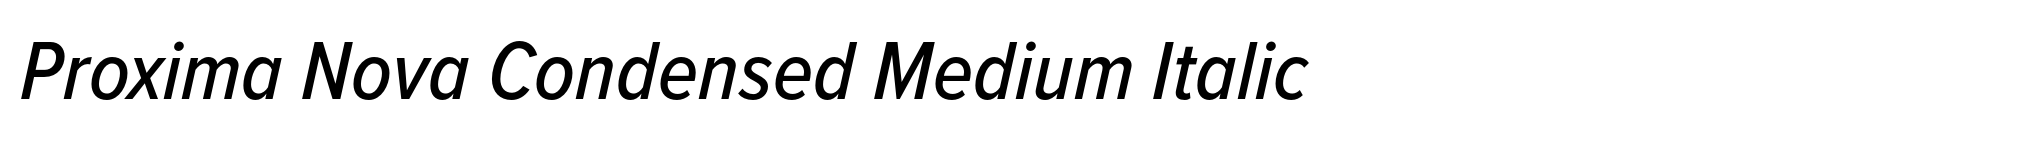 Proxima Nova Condensed Medium Italic image